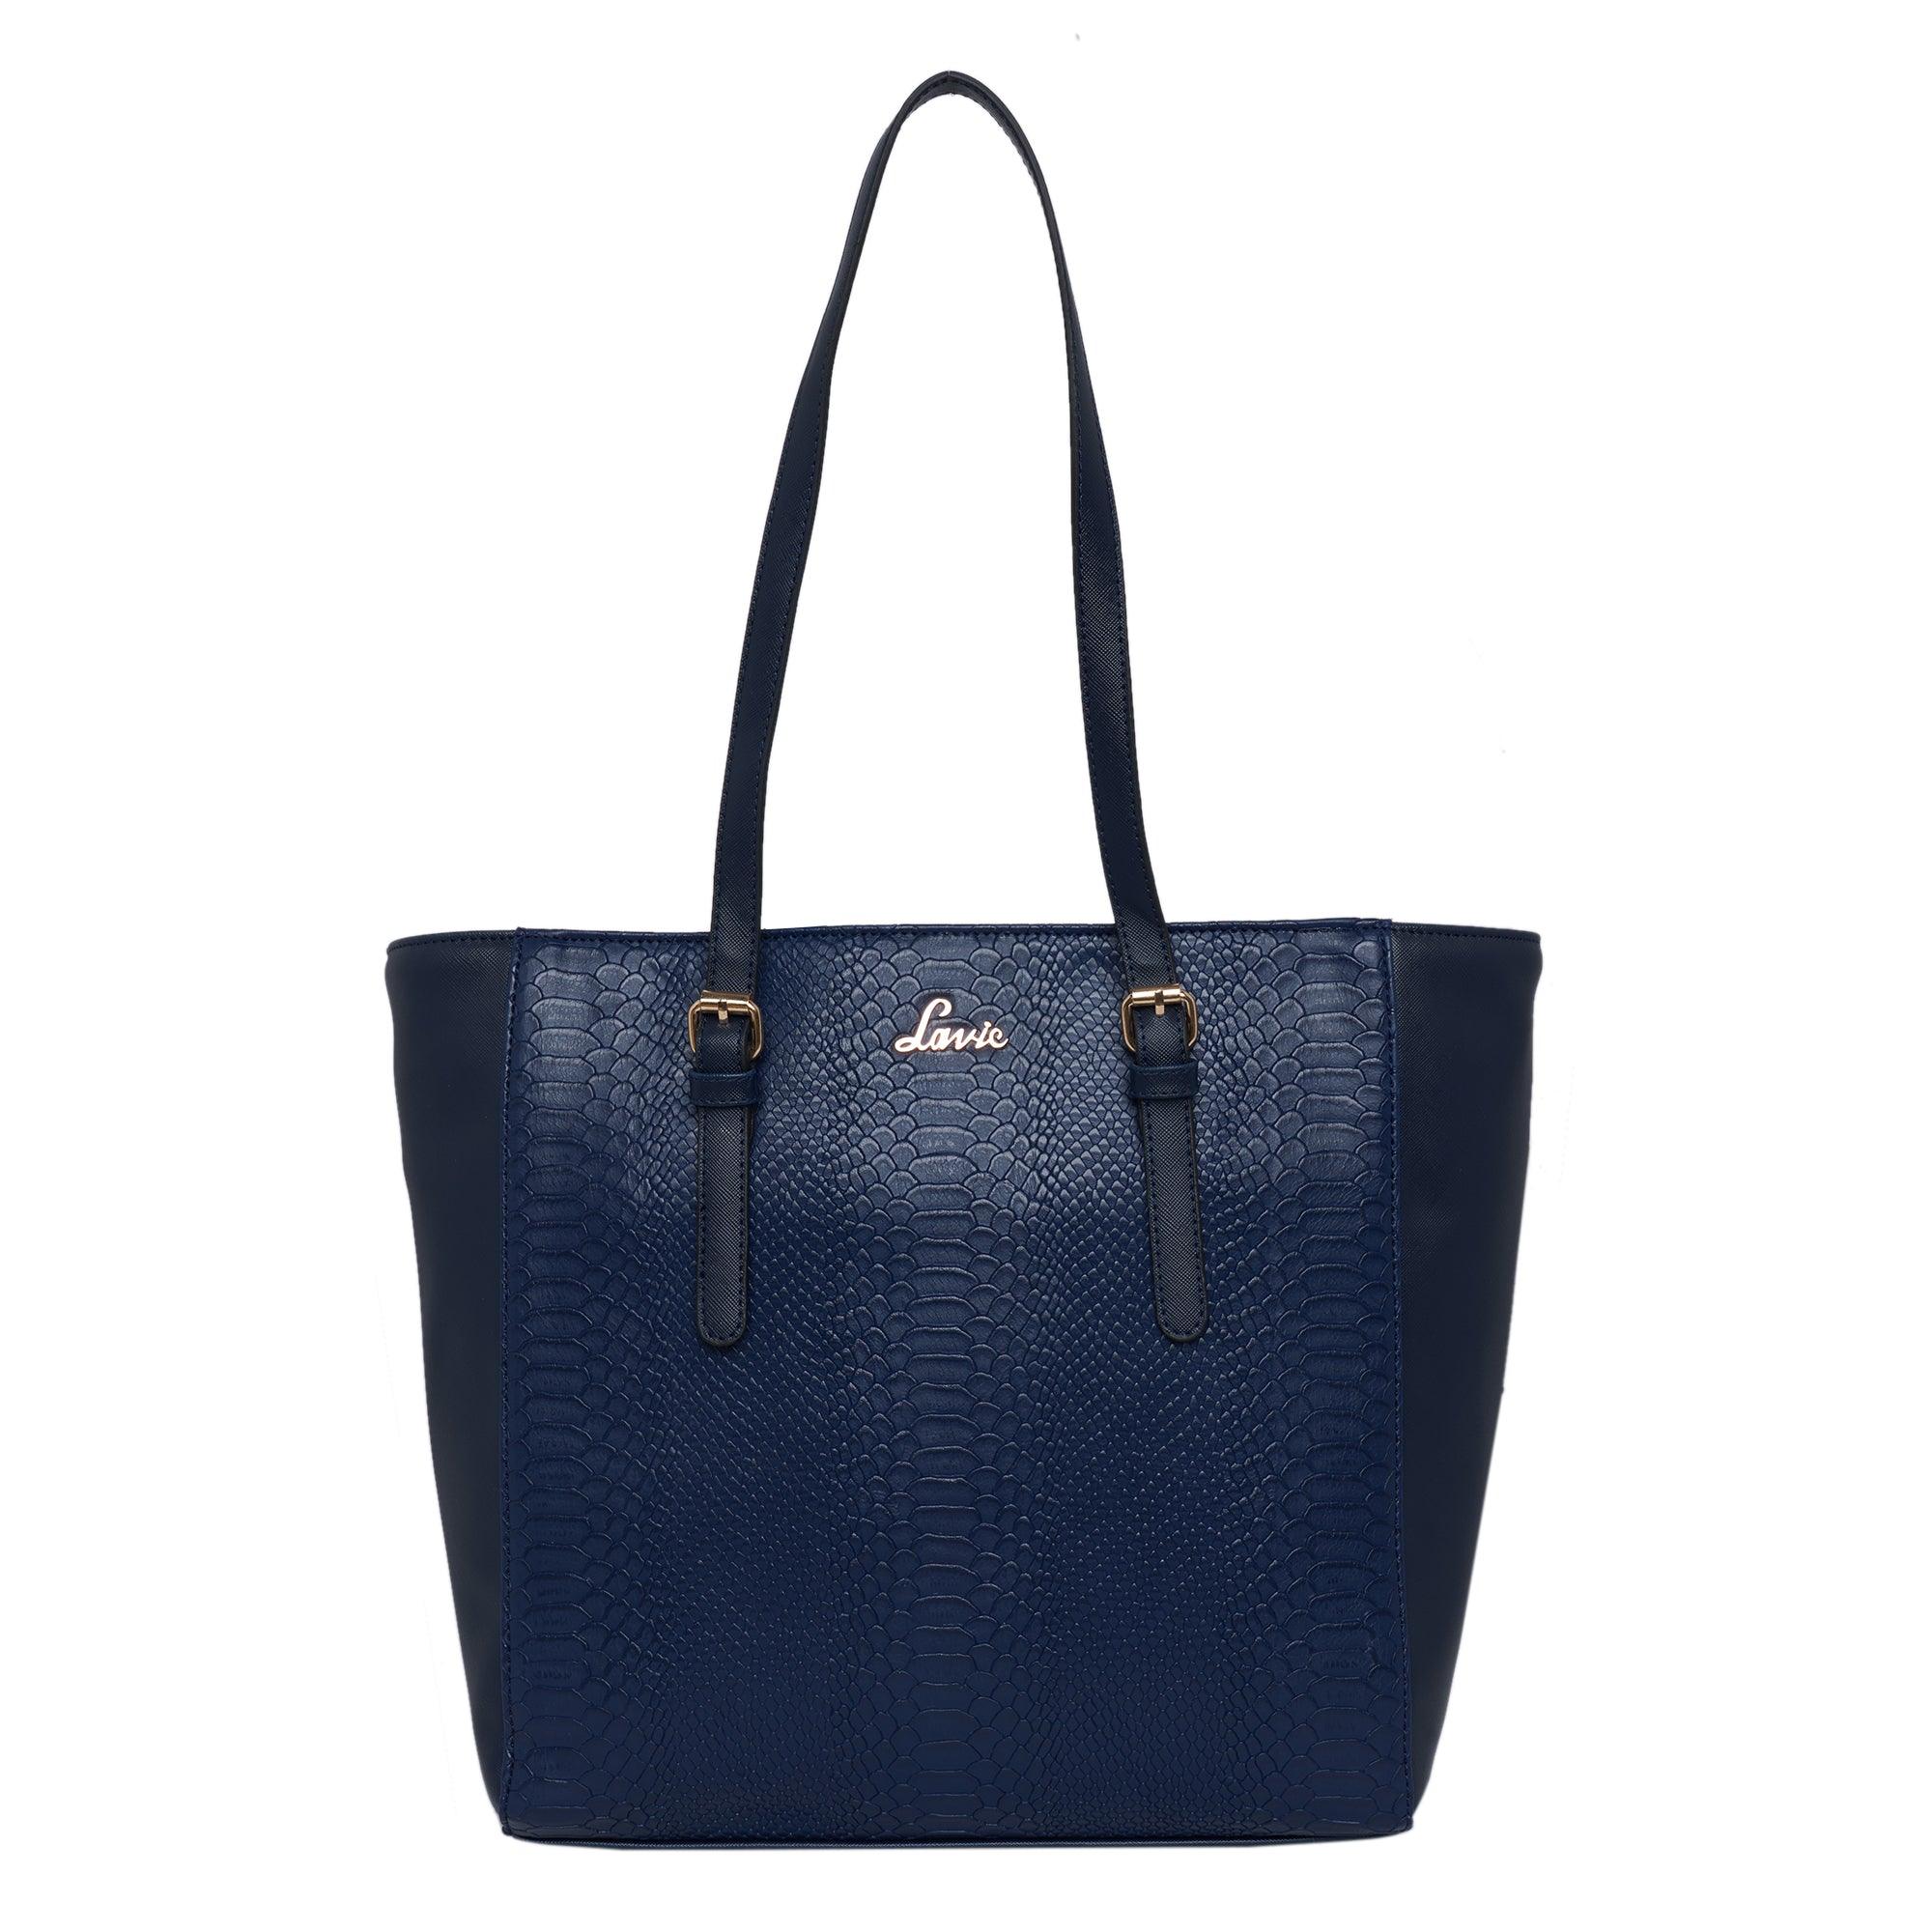 Buy LAVIE KALEY LG TOTE BAG Black Handbags Online at Best Prices in India -  JioMart.